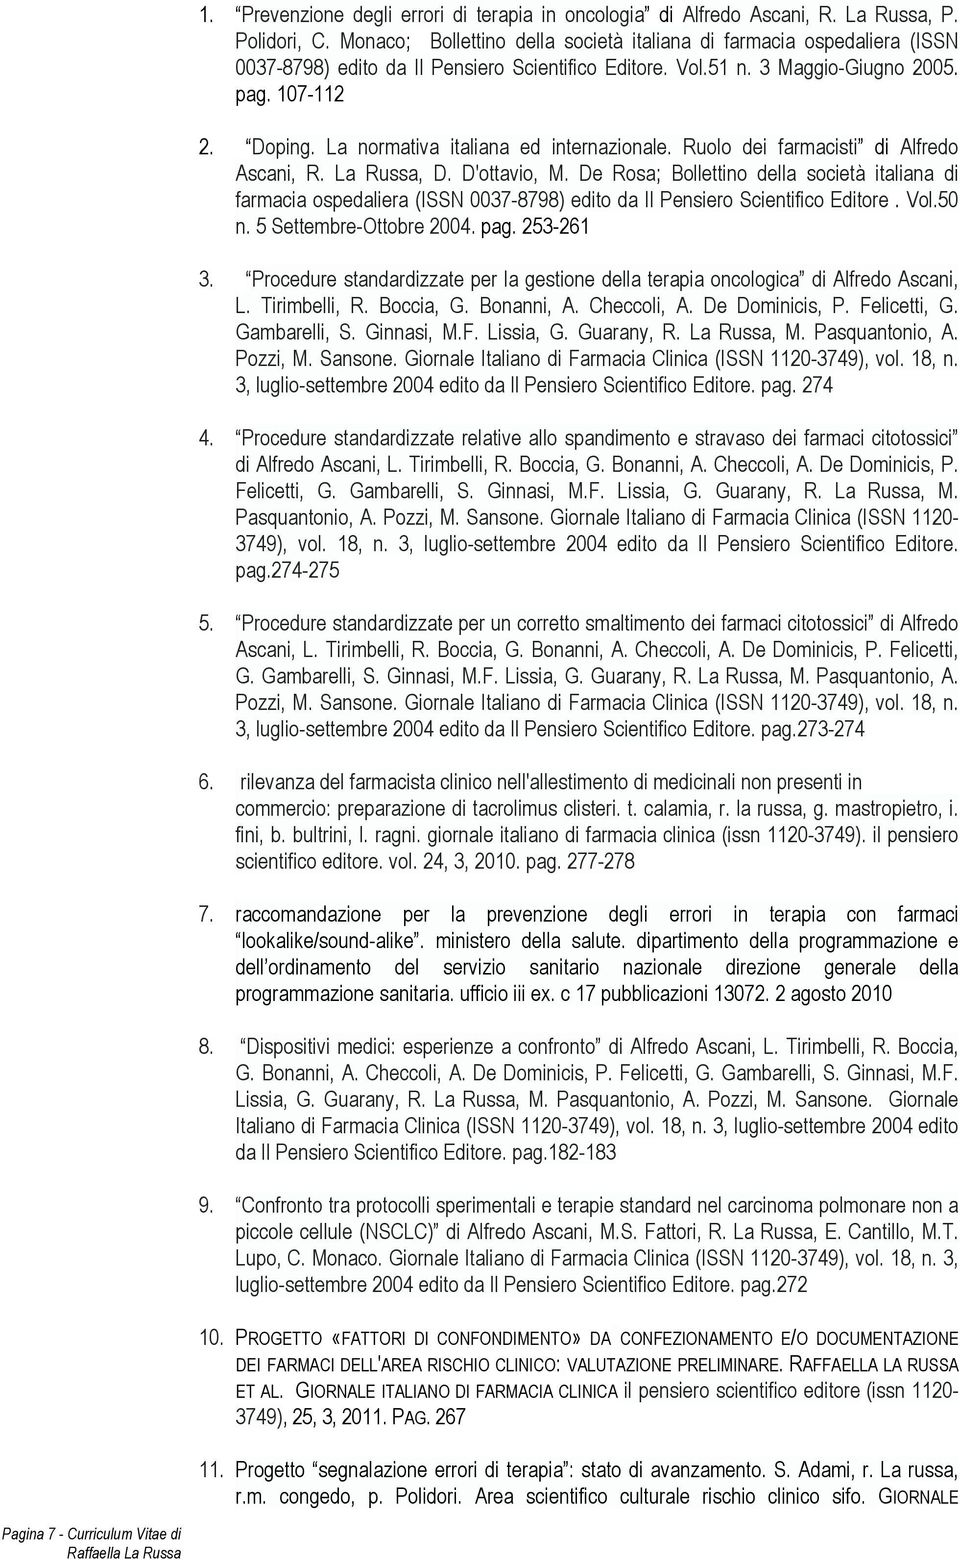 La normativa italiana ed internazionale. Ruolo dei farmacisti di Alfredo Ascani, R. La Russa, D. D'ottavio, M.